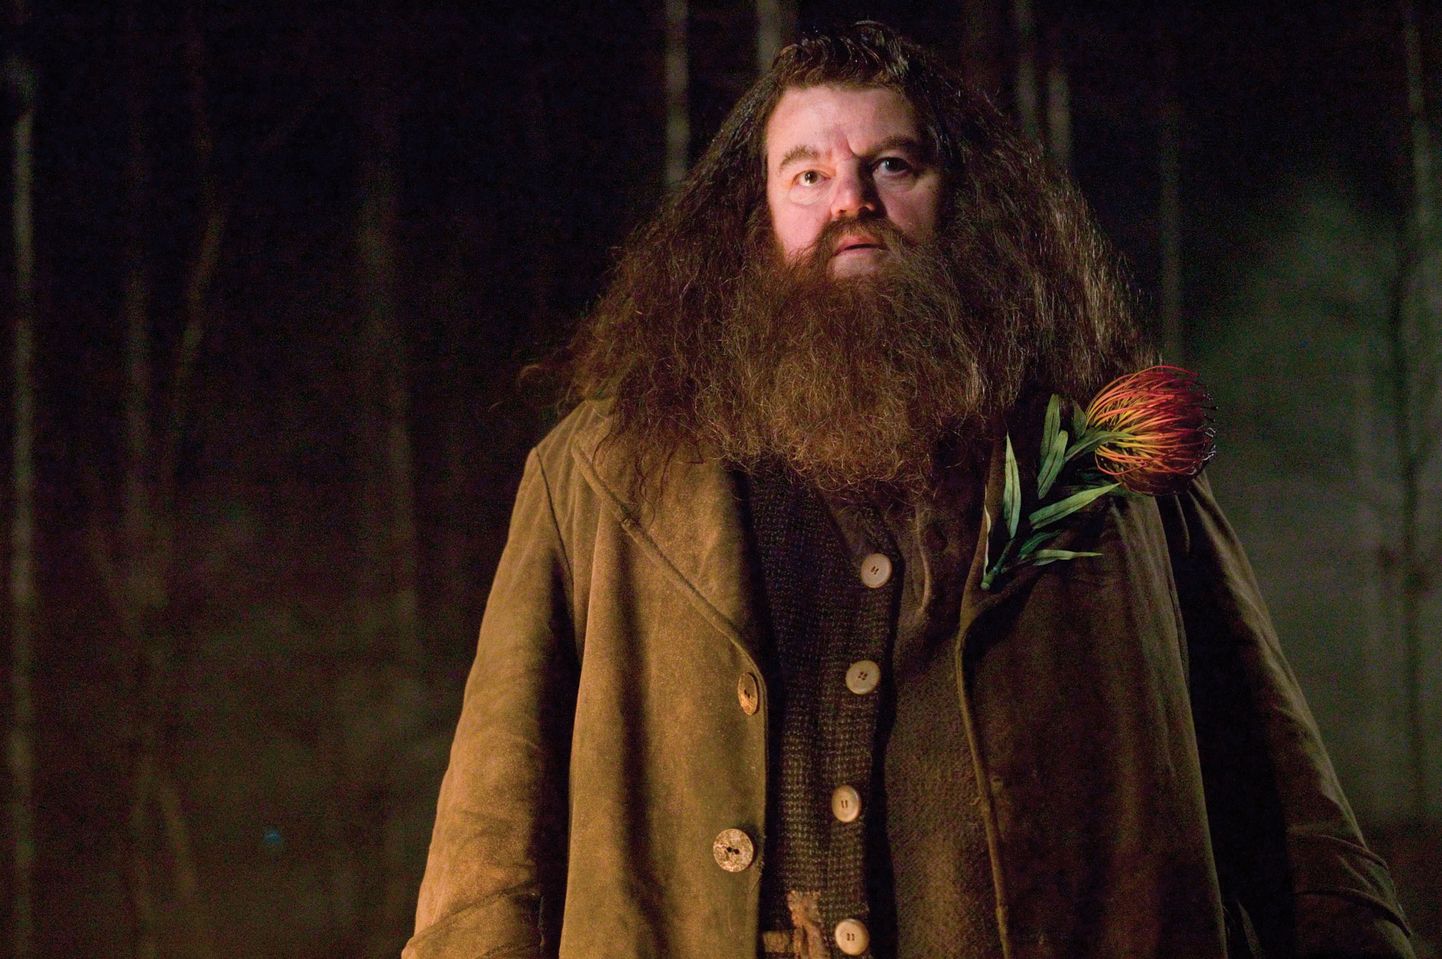 Robbie Coltrane Hagridina filmis «Harry Potter ja tulepeeker».